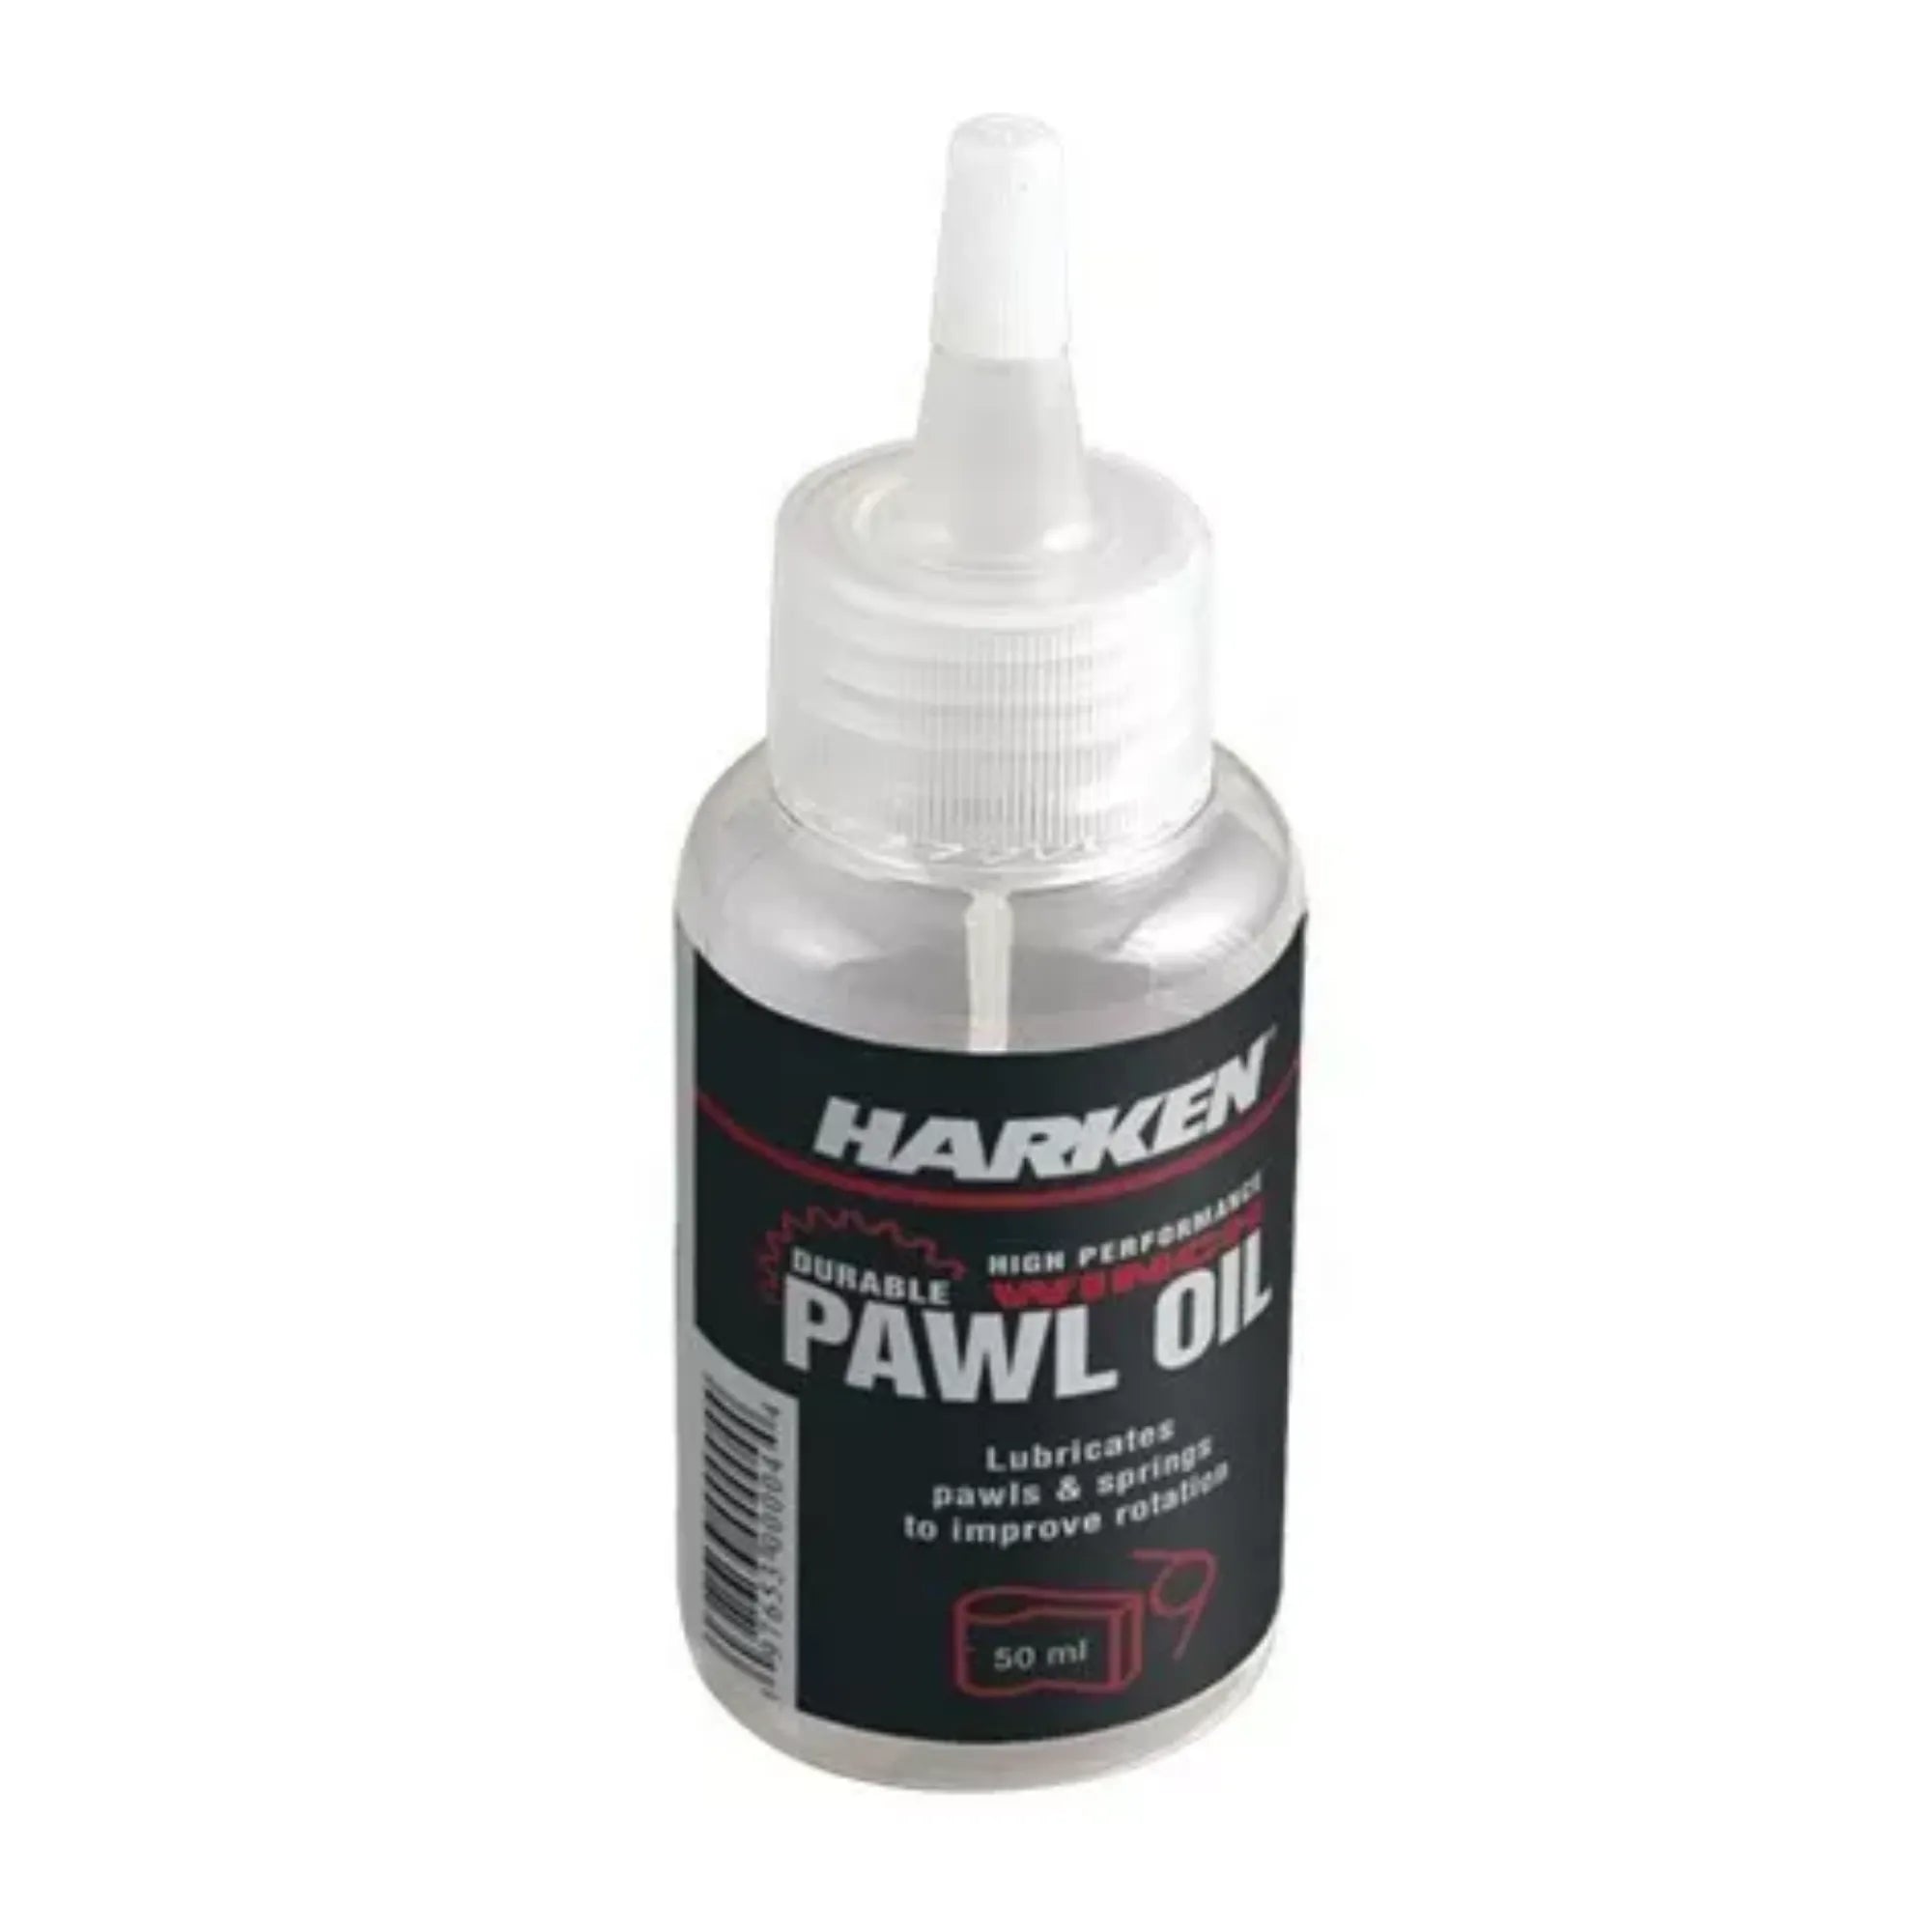 Pawl Oil